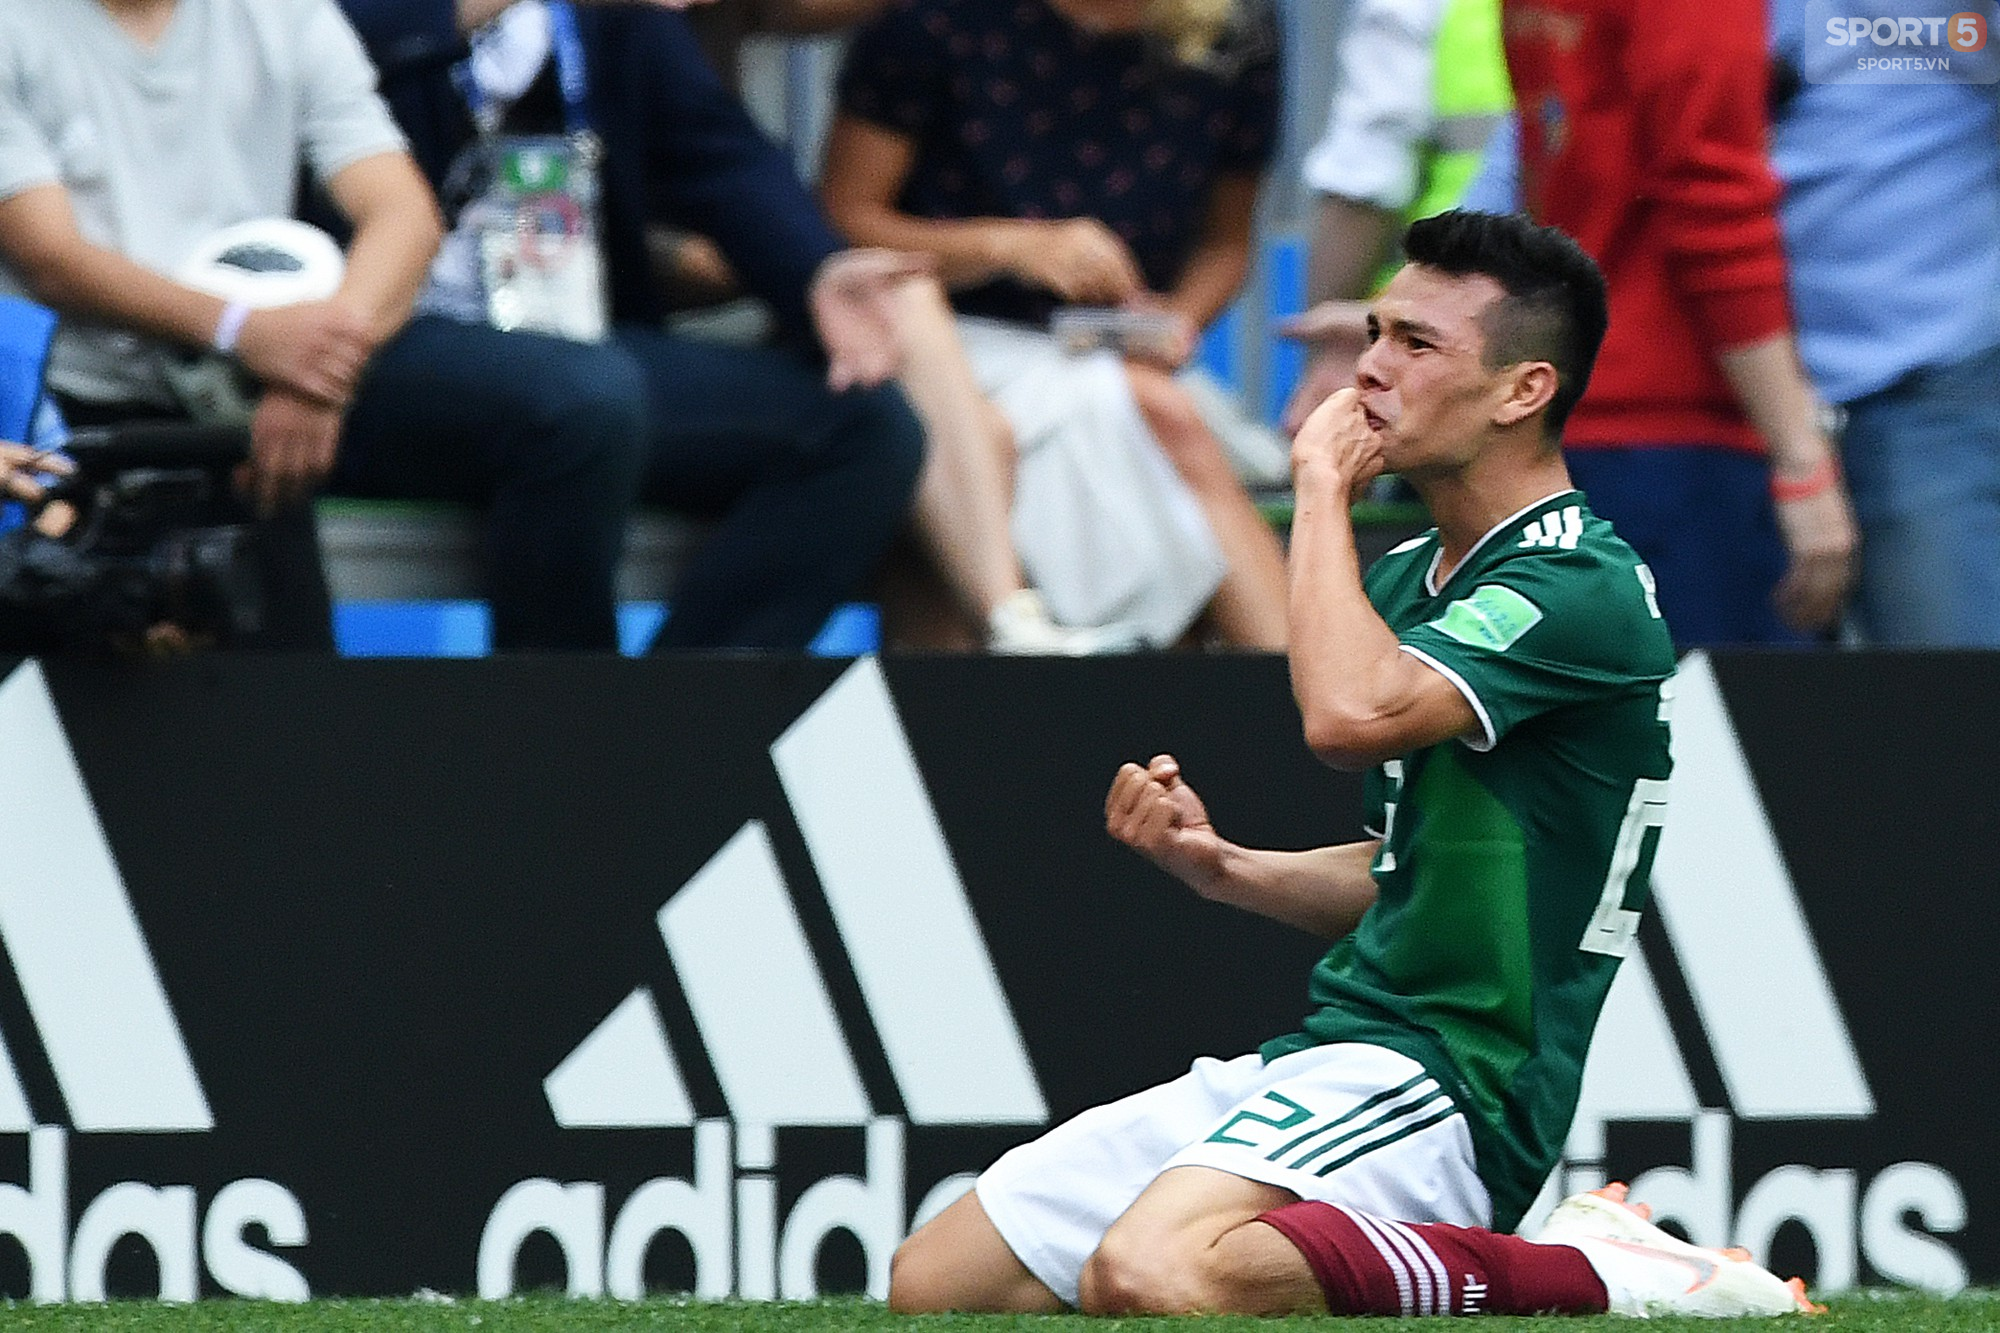 Chuyển nhượng mùa World Cup: Người hùng của Mexico lọt vào tầm ngắm Arsenal - Ảnh 1.